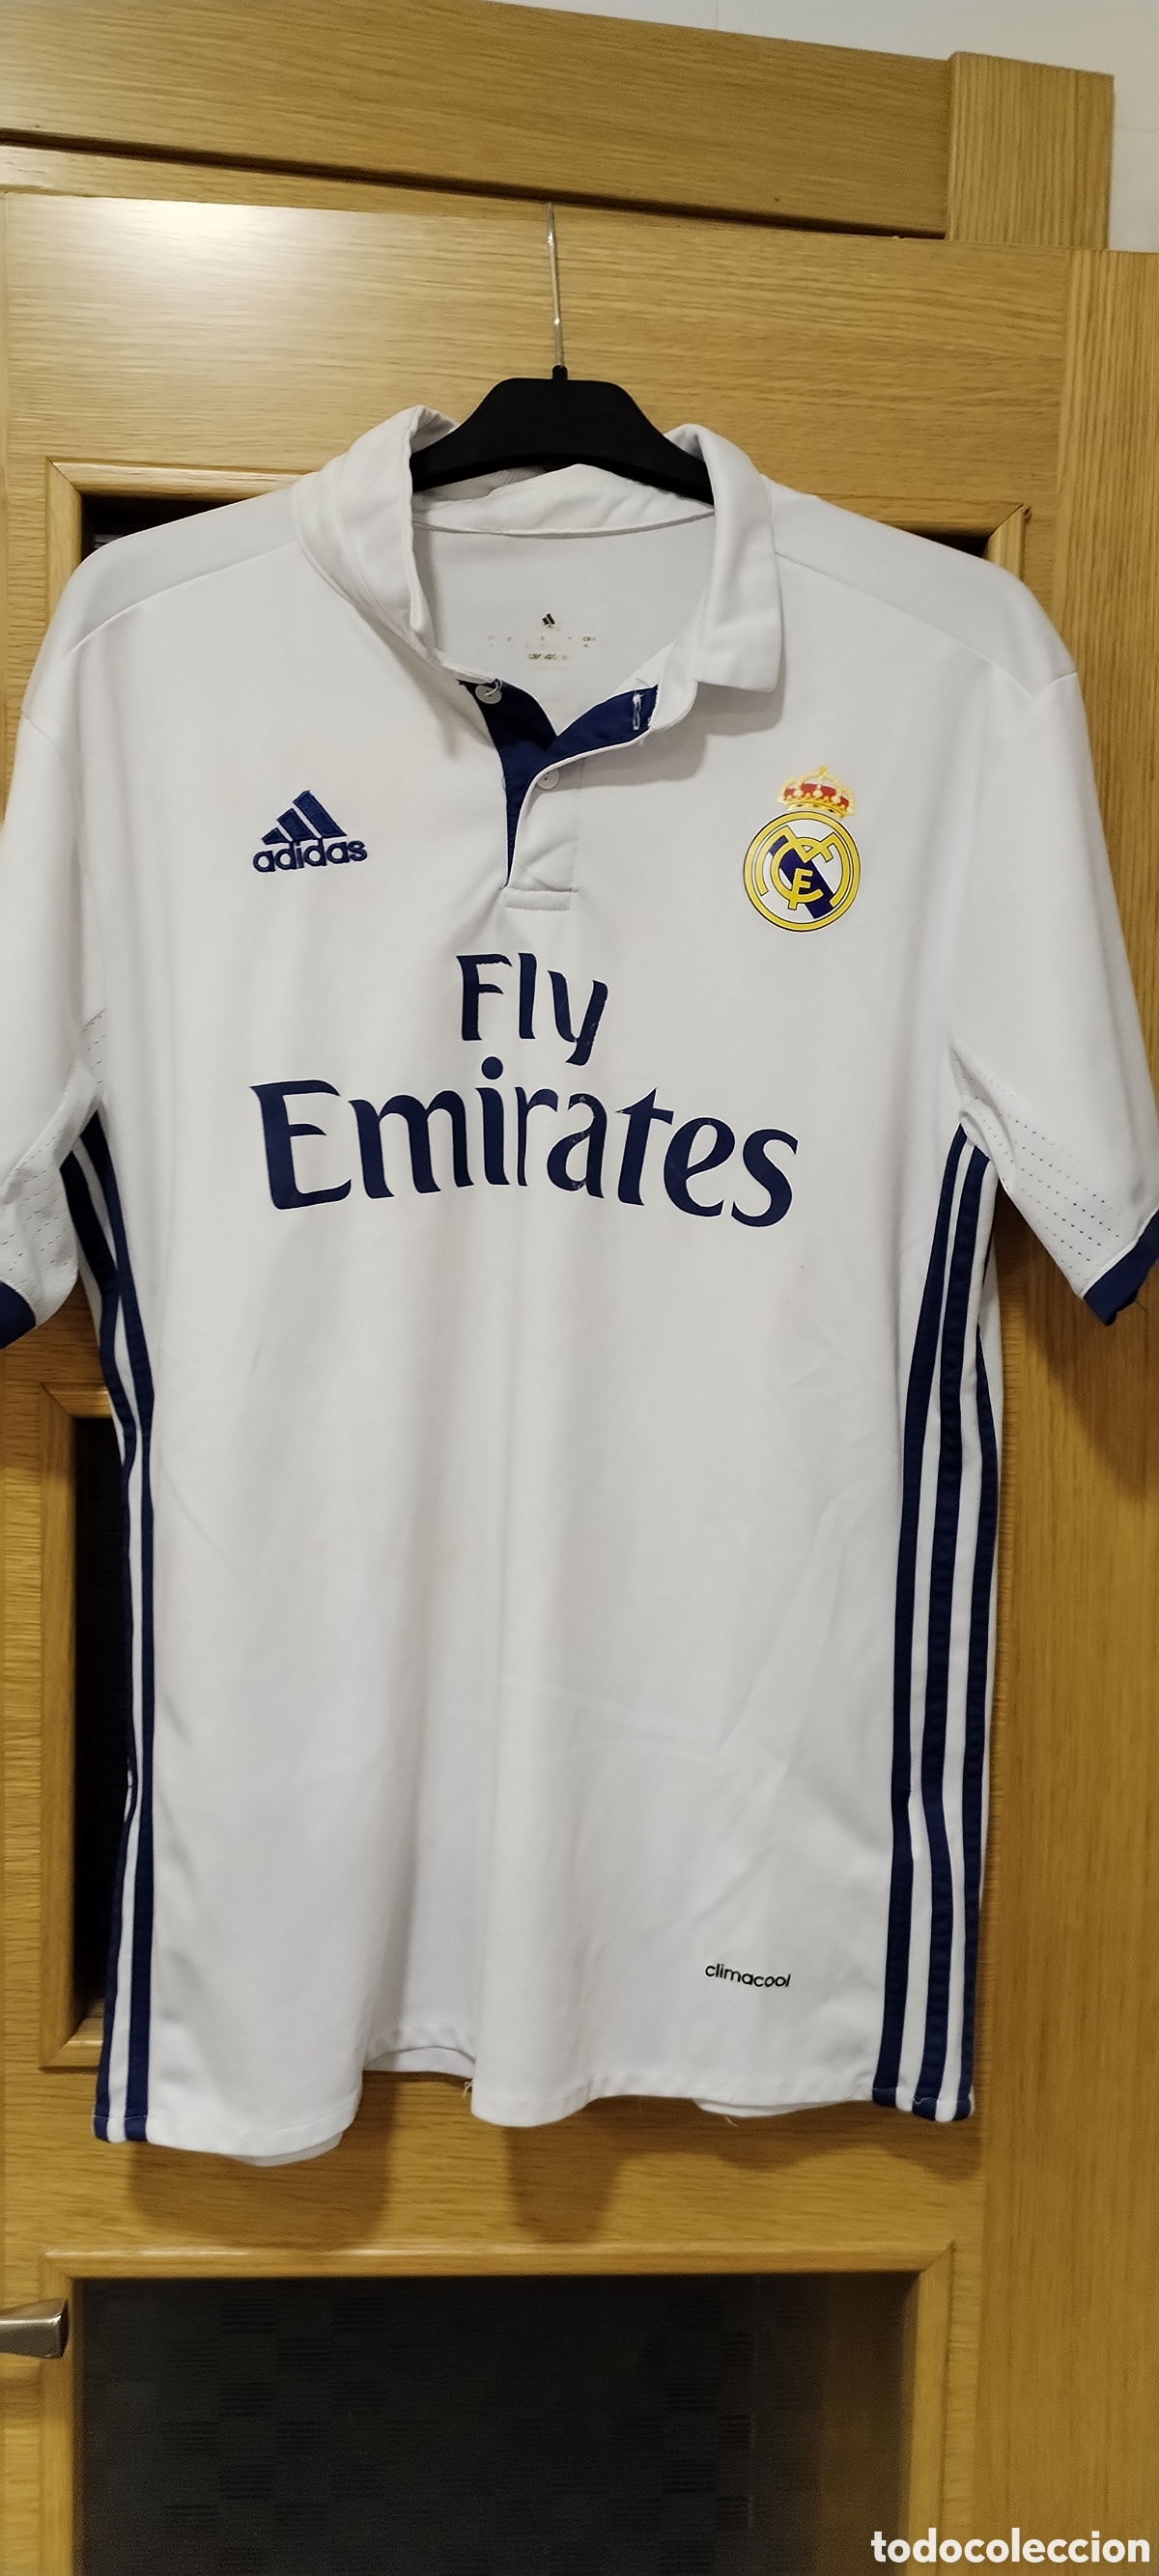 camiseta real madrid - Acheter Maillots anciens de football sur  todocoleccion